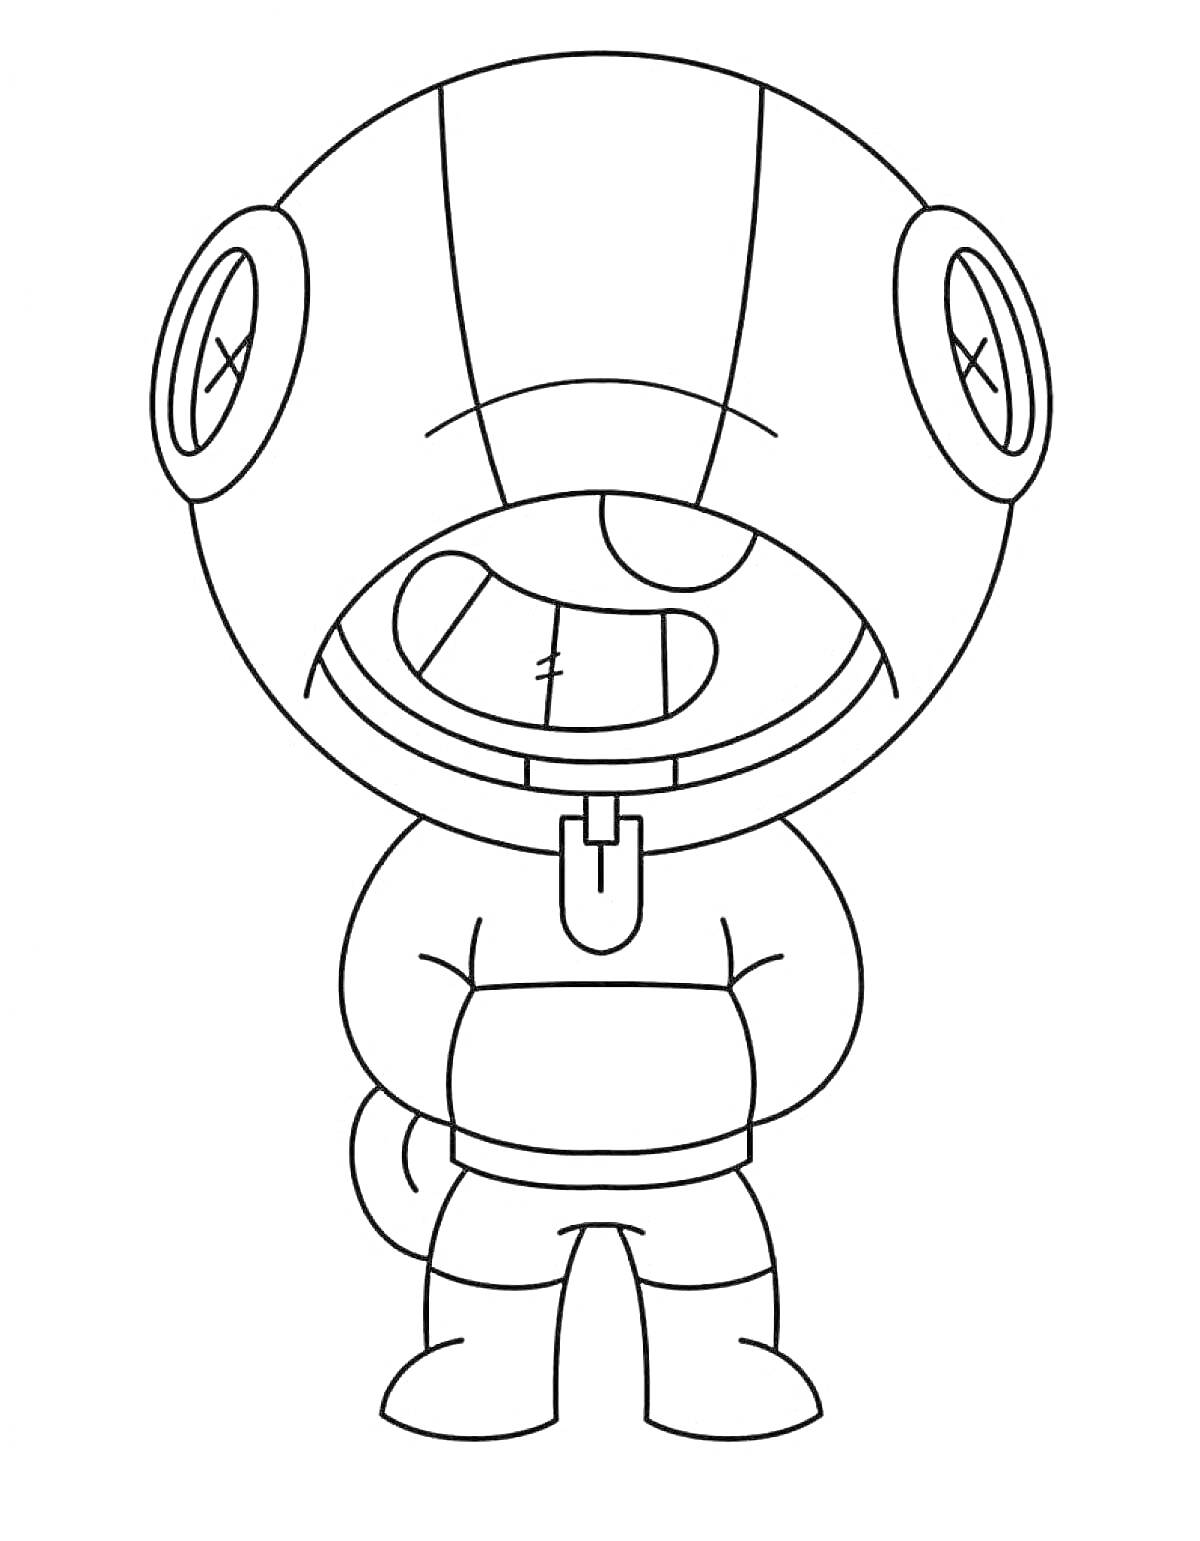 Раскраска Леон из мультфильма в капюшоне с большими круглыми глазами